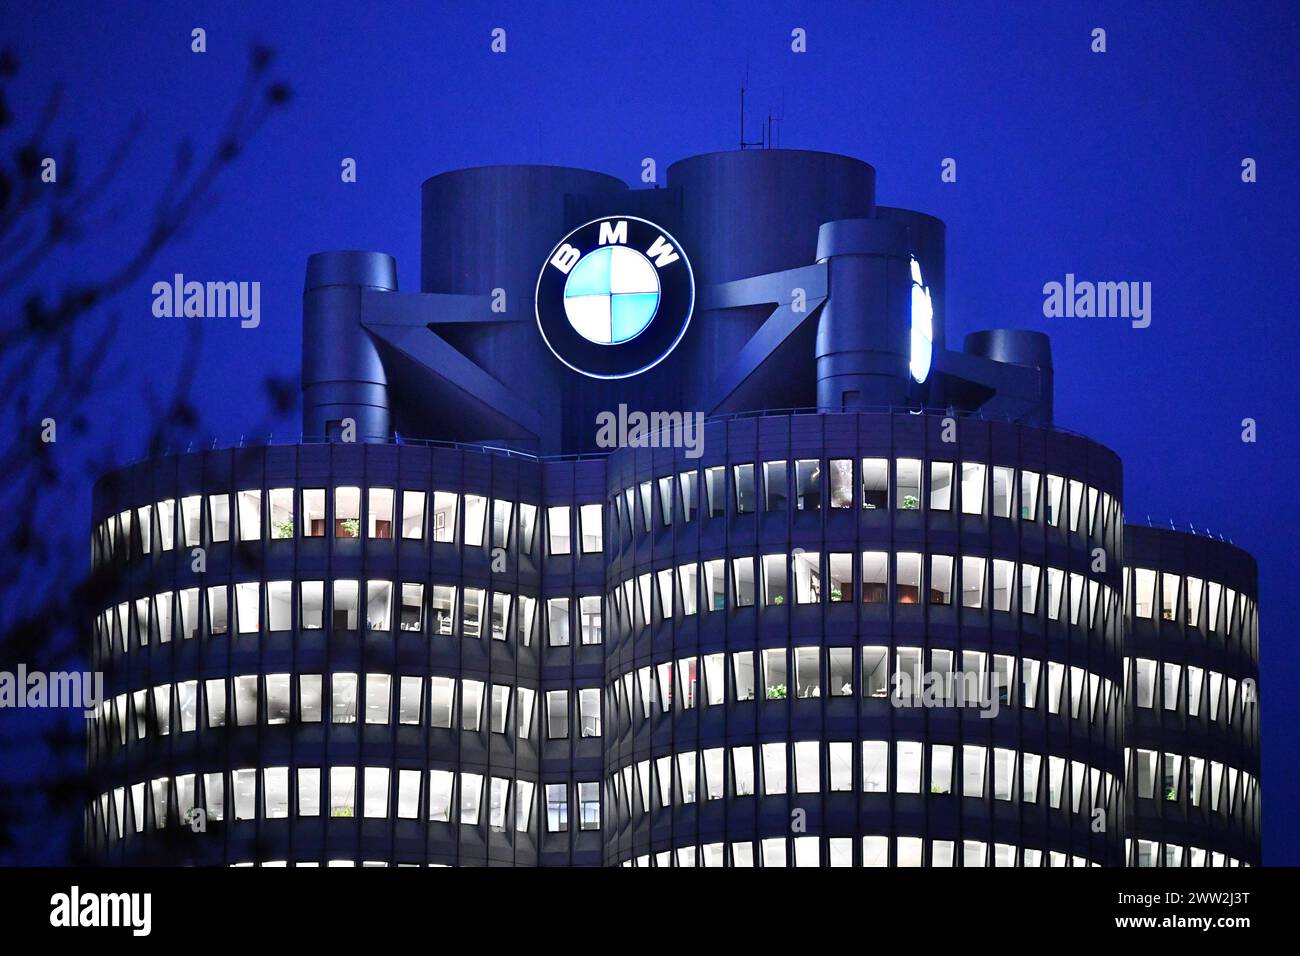 Themenbild zur BMW GROUP Jahrespressekonferenz am 21.03.2024. ARCHIVFOTO: BMW legt Jahresbilanz vor . München,Gebaeude,Tuerme, Hochhaus,Sitz,Hauptsitz, Nachtaufname,Abendstimmung,beleuchtet,Beleuchtung. Autobauer,Auto,Autos,Automobil,Hersteller,Autoindustrie,Premiummarke. *** Themenbild für die BMW GROUP Jahrespressekonferenz am 21 03 2024 ARCHIVFOTO BMW präsentiert Jahresbilanz München, Gebäude, Türme, Wolkenkratzer, Hauptsitz, Nachtaufnahme, Abendstimmung, beleuchtet, Beleuchtung Autohersteller,Auto,Autos,Automobile,Hersteller,Autoindustrie,Premiummarke Stockfoto